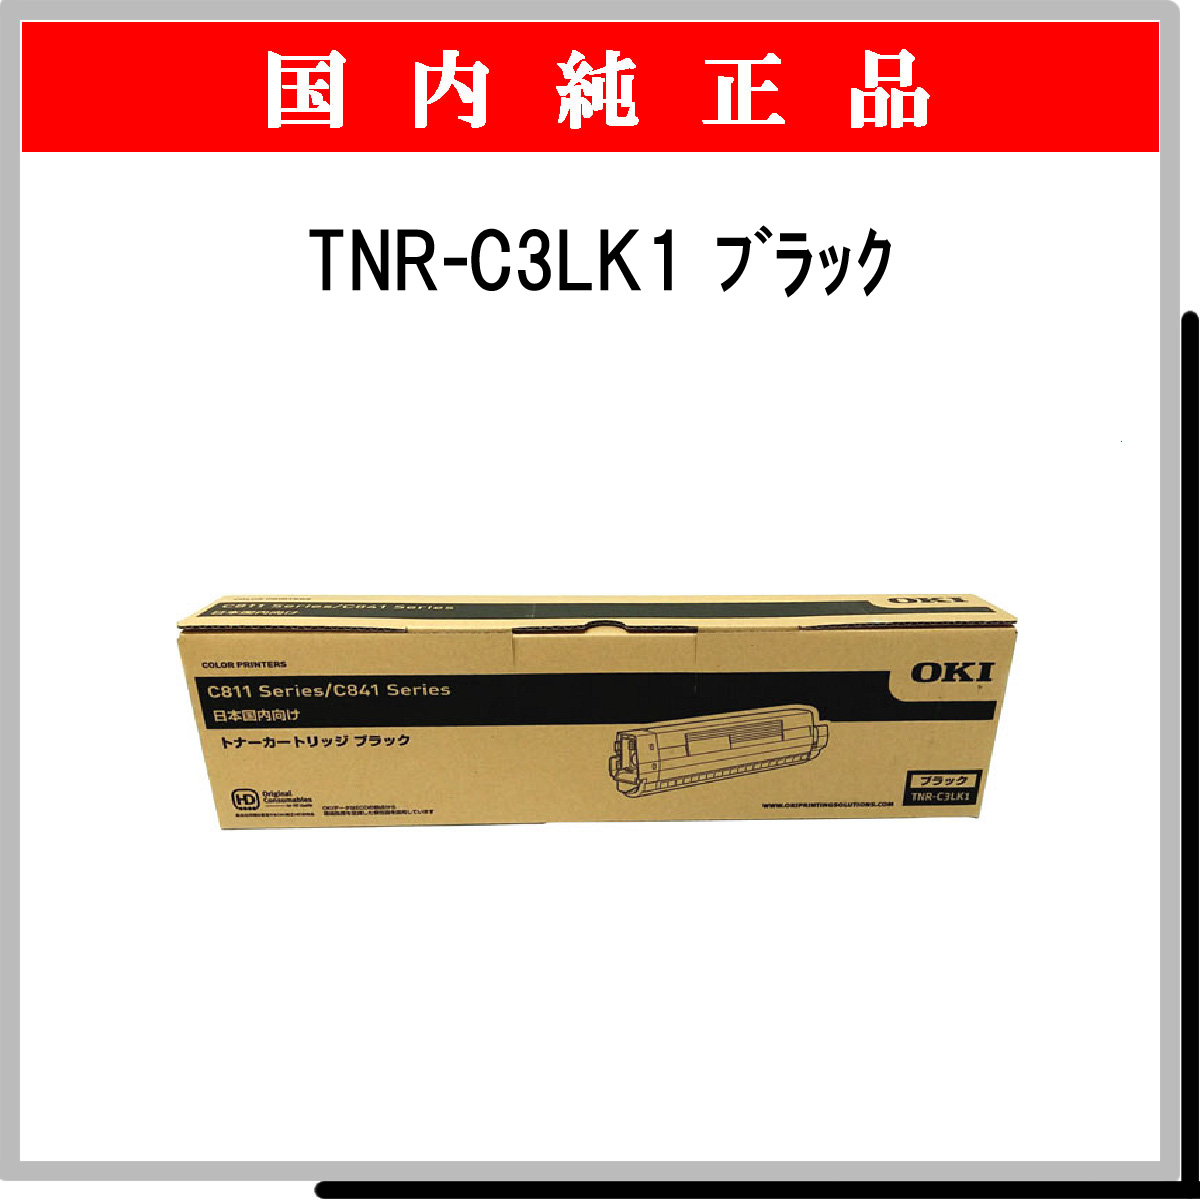 TNR-C3LK1 純正